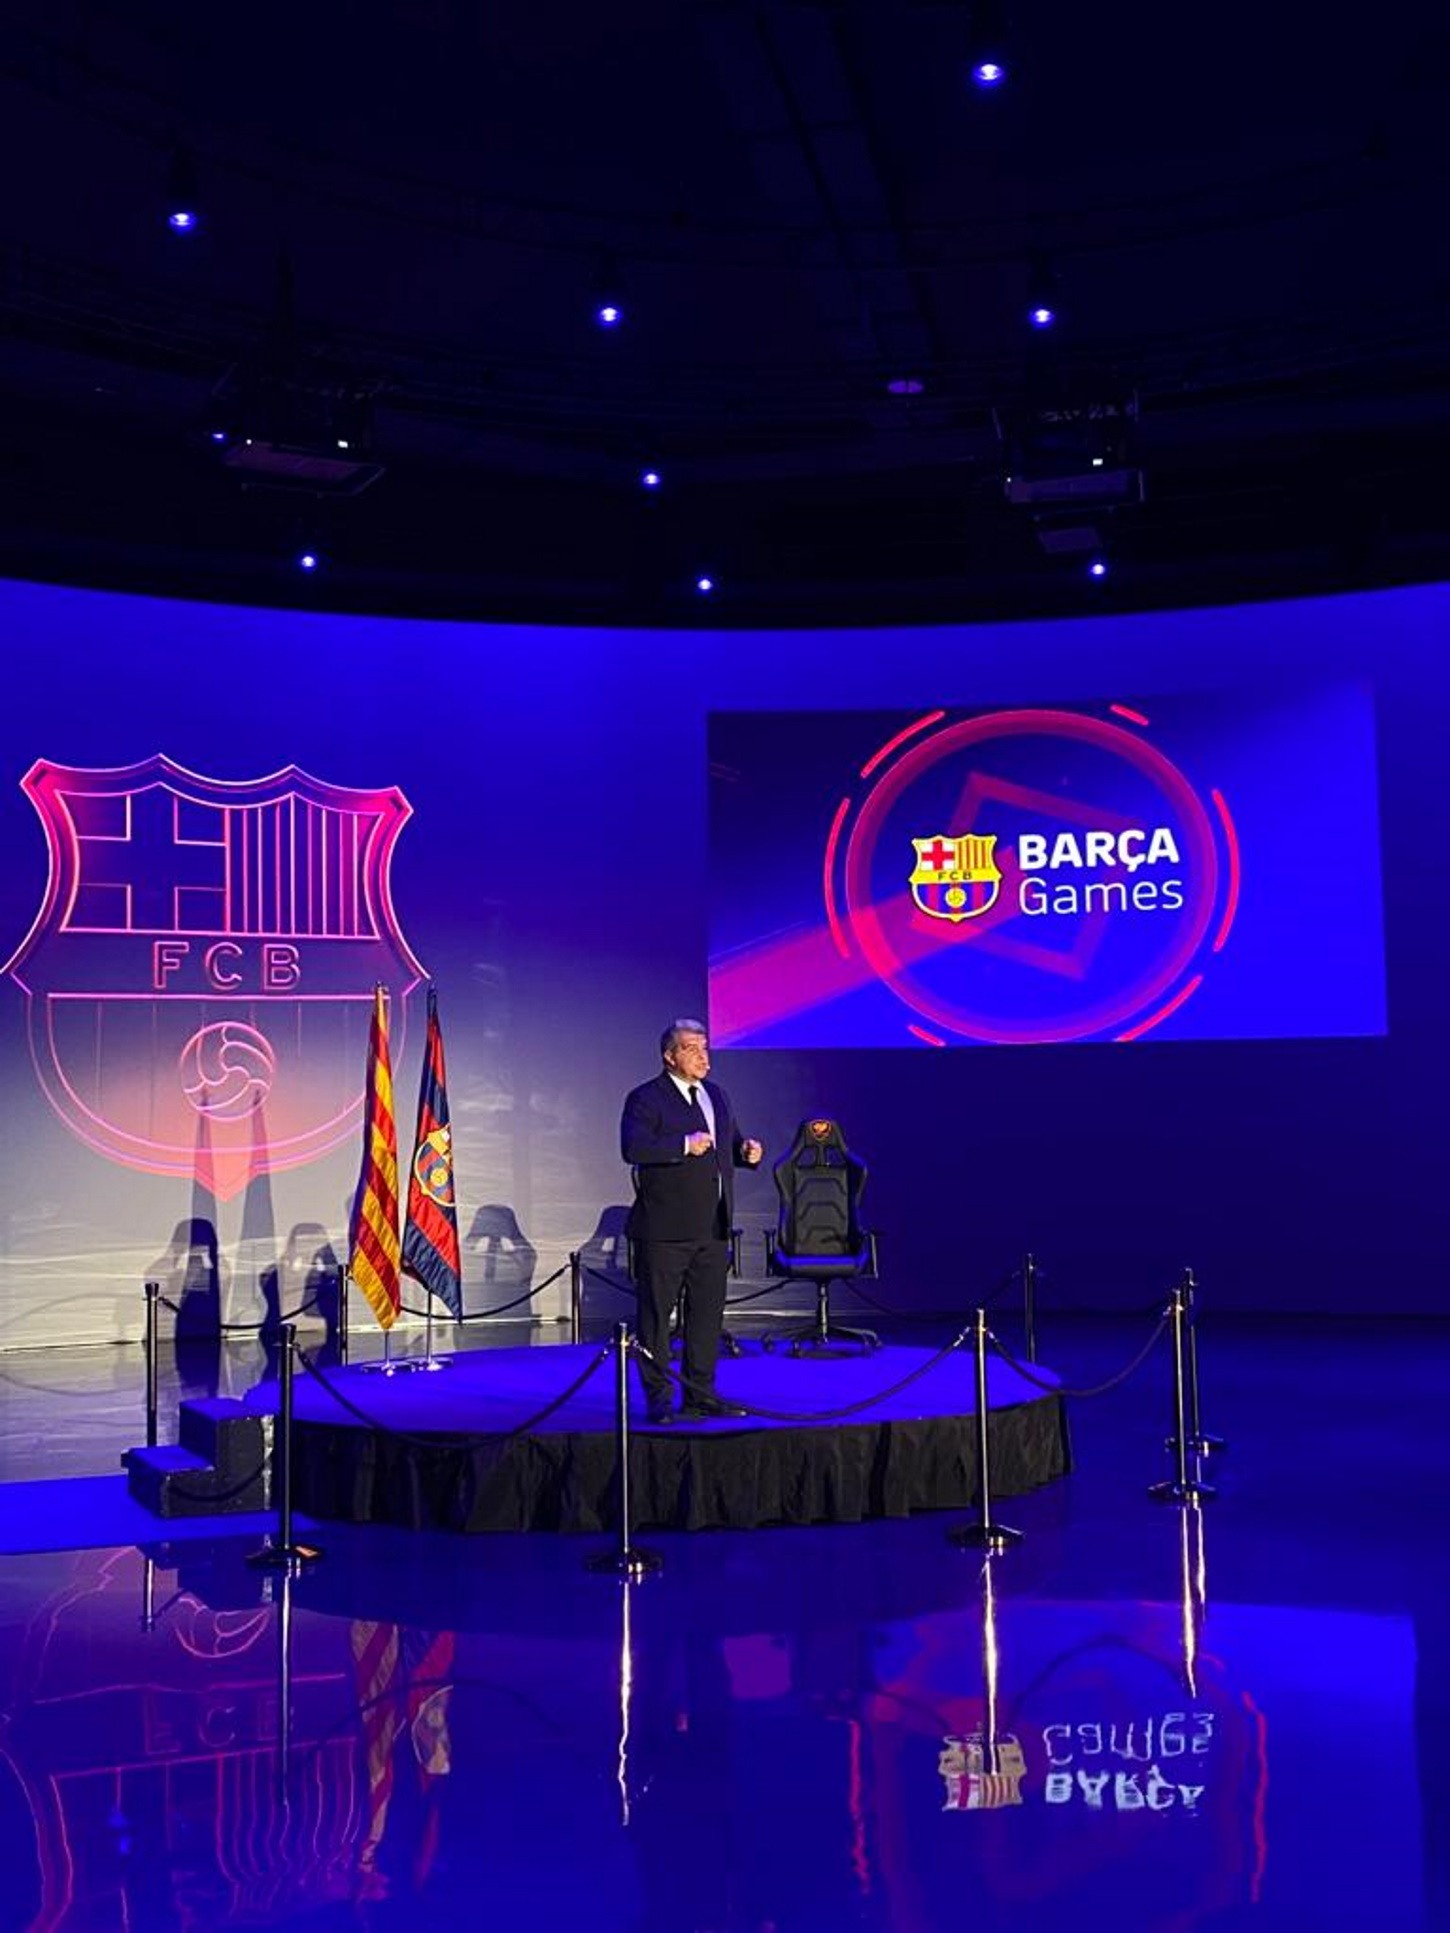 El FC Barcelona presenta Barça Games, una plataforma de videojuegos con Masia Virtual incluida